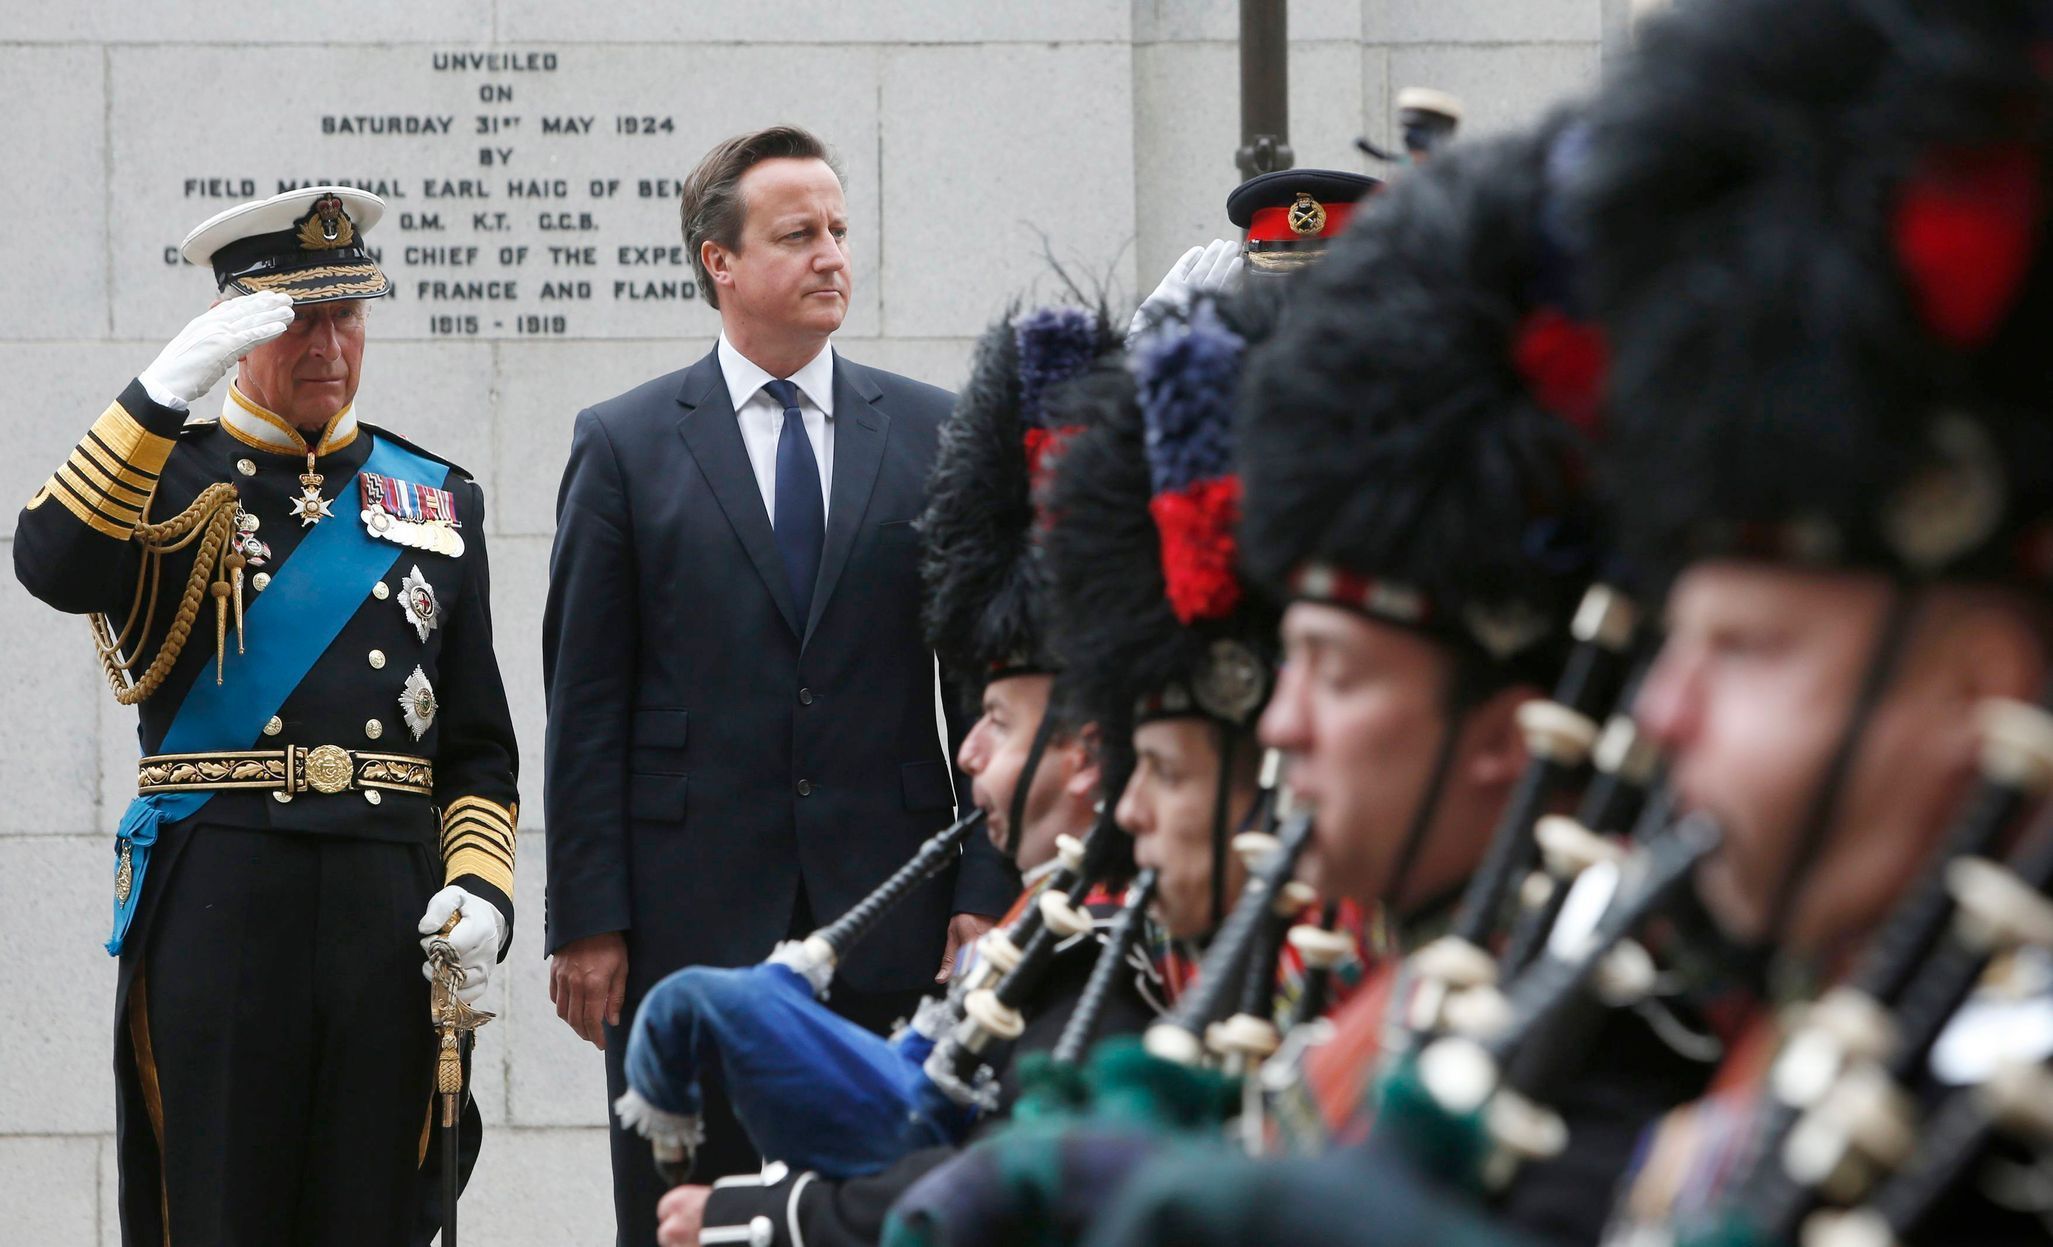 100. výročí, 1. světová válka, Skotsko, Glasgow, princ Charles, britský premiér David Cameron